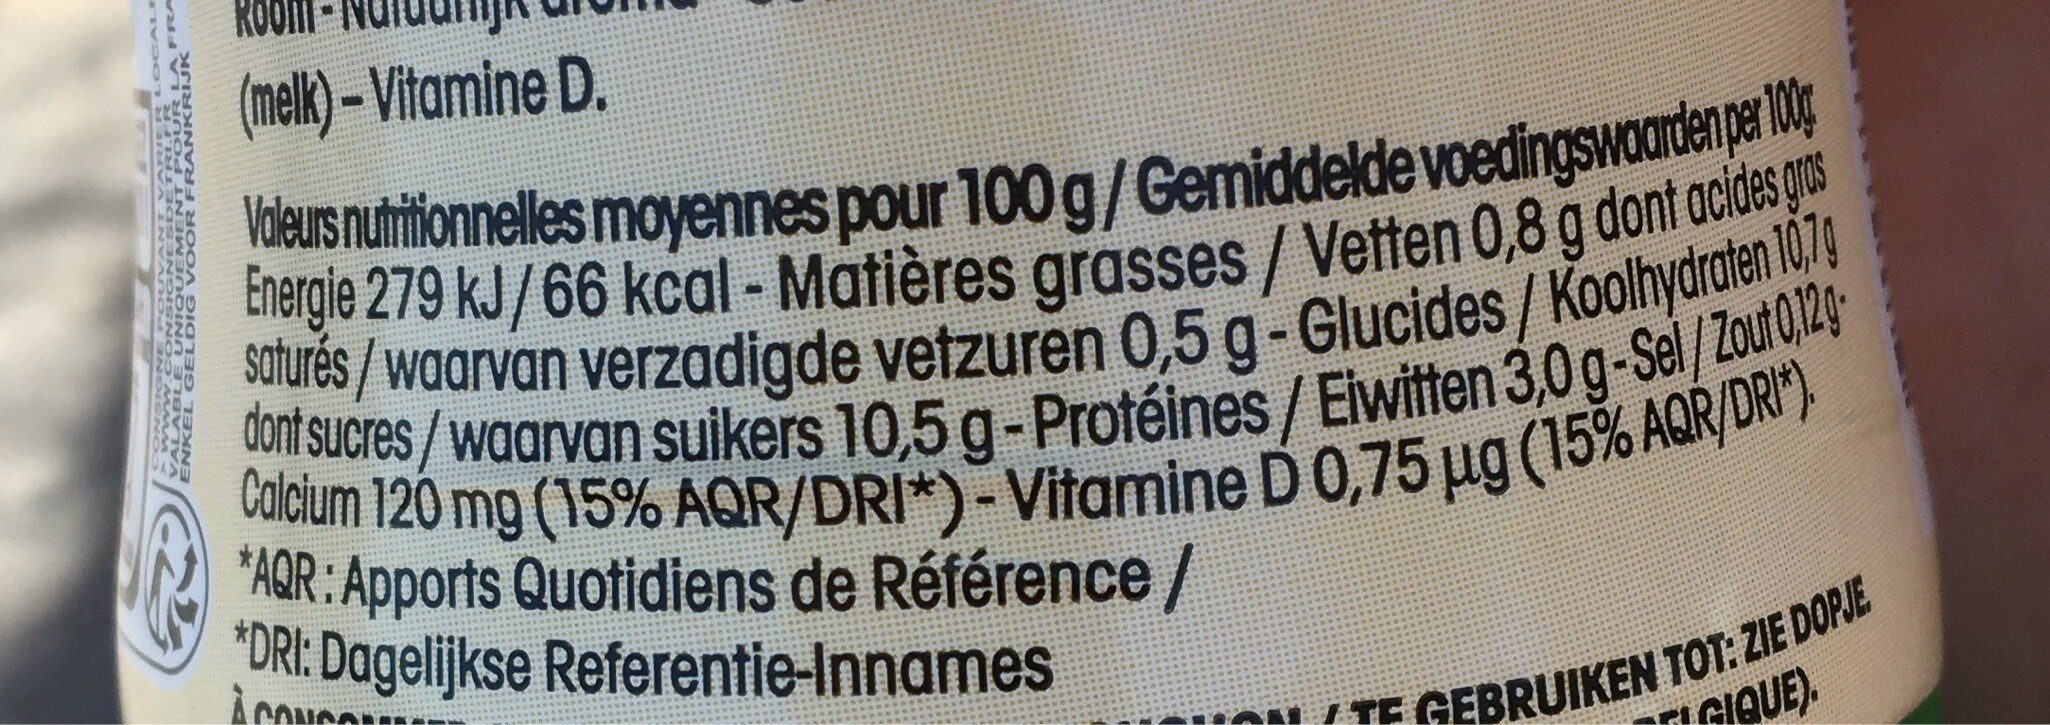 Yop vanille - Información nutricional - fr